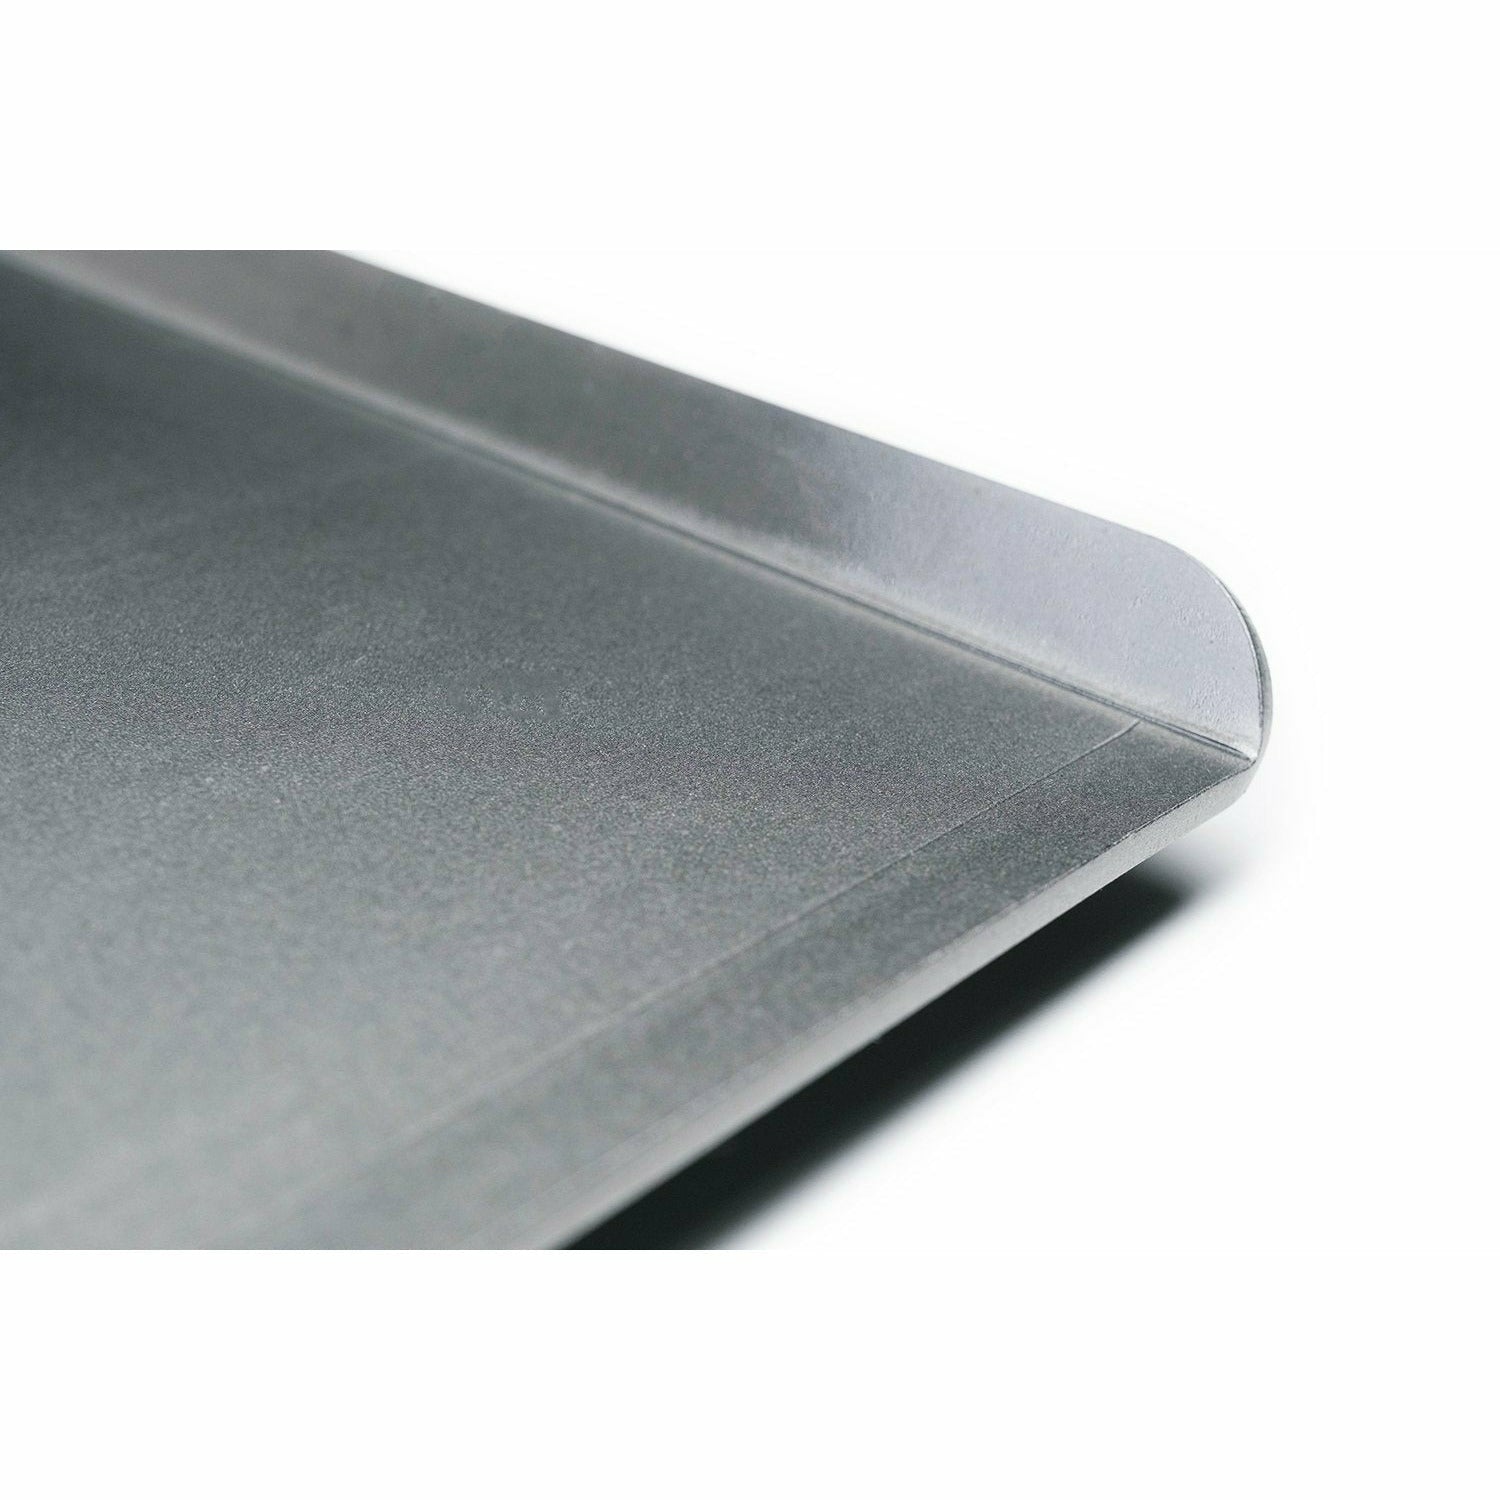 Extraíble Flat Gris Plata para Accesorios de Limpieza en Cocina